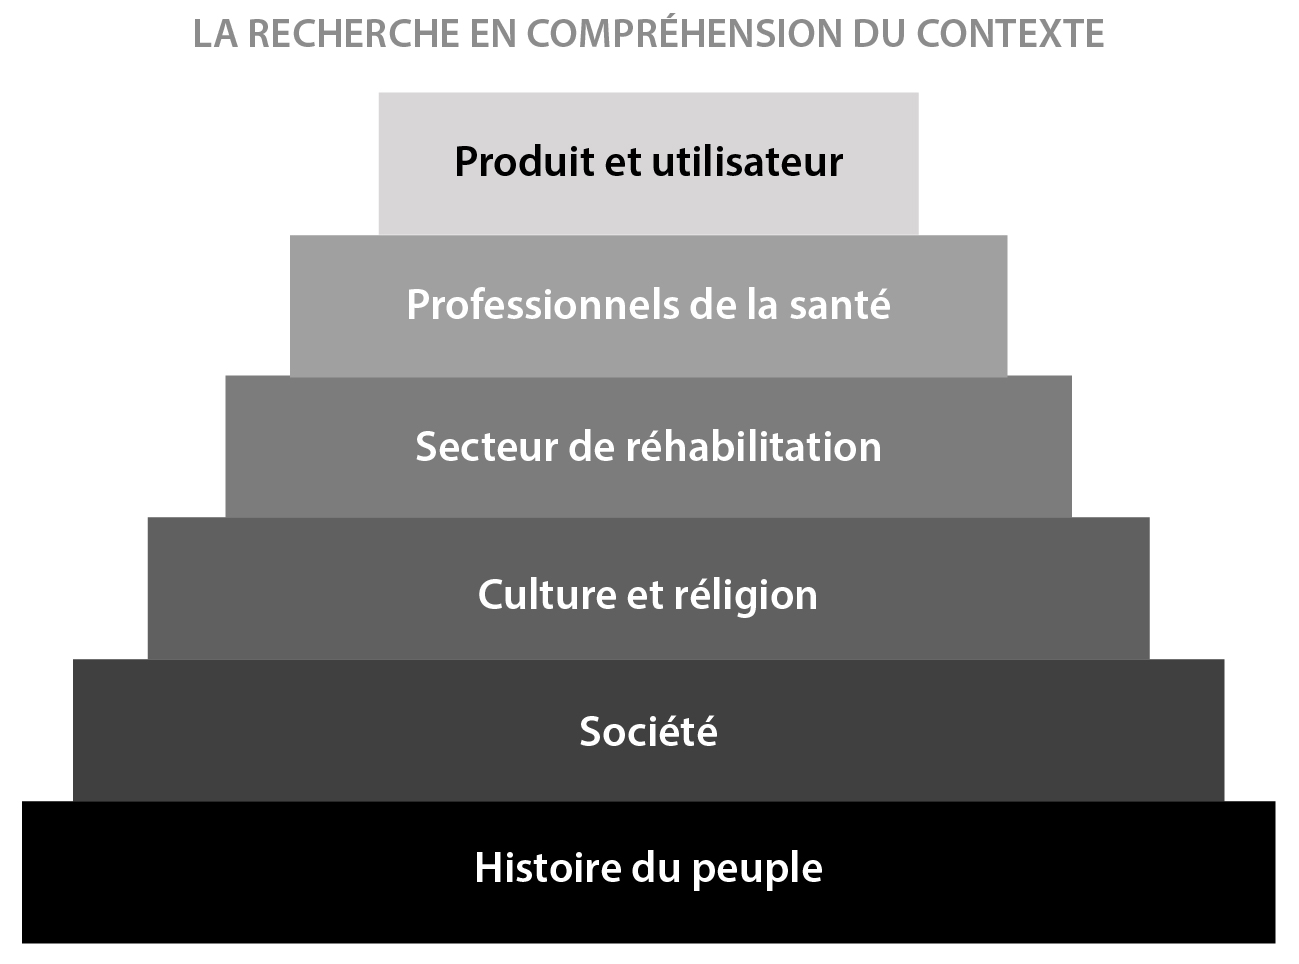 La pyramide à six niveaux, commençant par le bas : histoire du peuple, société, culture et religion, secteur de réhabilitation, professionnels de la santé. Tout en haut : produit et utilisateur.